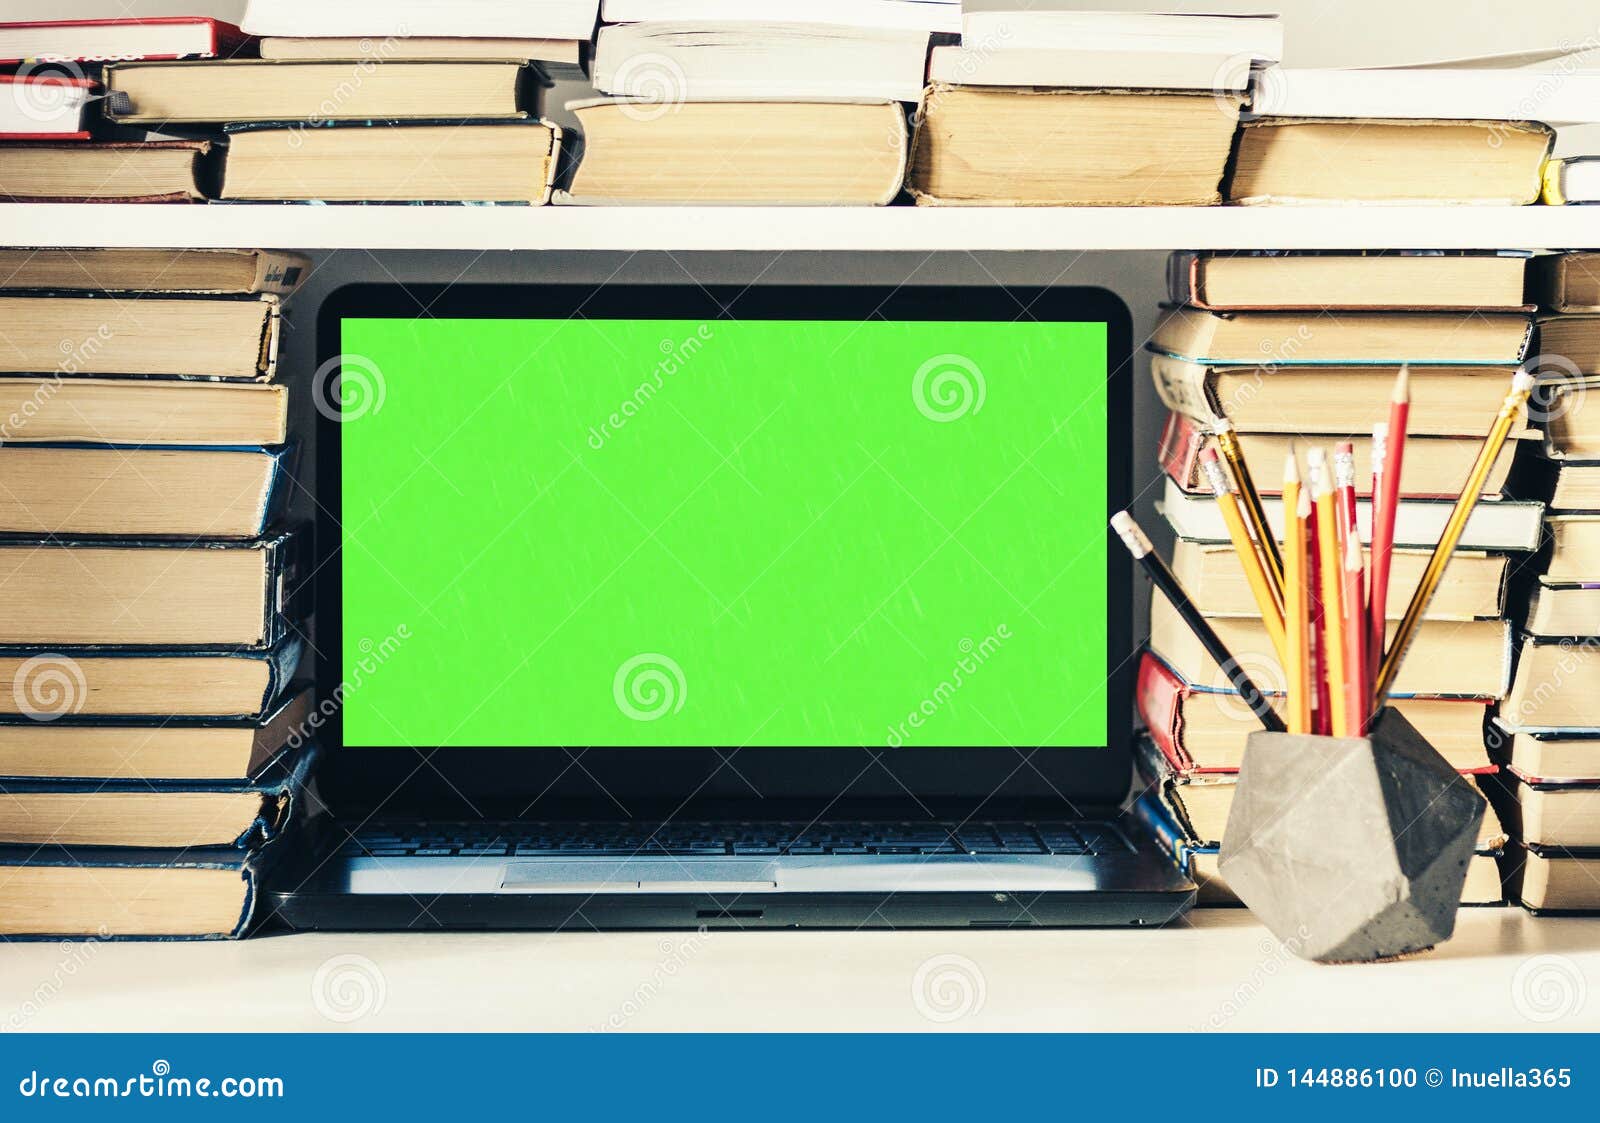 Bạn muốn tạo bối cảnh học tập thuận tiện và đầy cảm hứng? Hãy xem ngay hình ảnh về phông nền màn hình xanh đầy sáng tạo kết hợp với laptop, đống sách, sổ tay và bút viết trên nền trắng. Đẹp mắt và tiện lợi, chắc chắn sẽ giúp bạn tập trung tối đa vào công việc học tập.